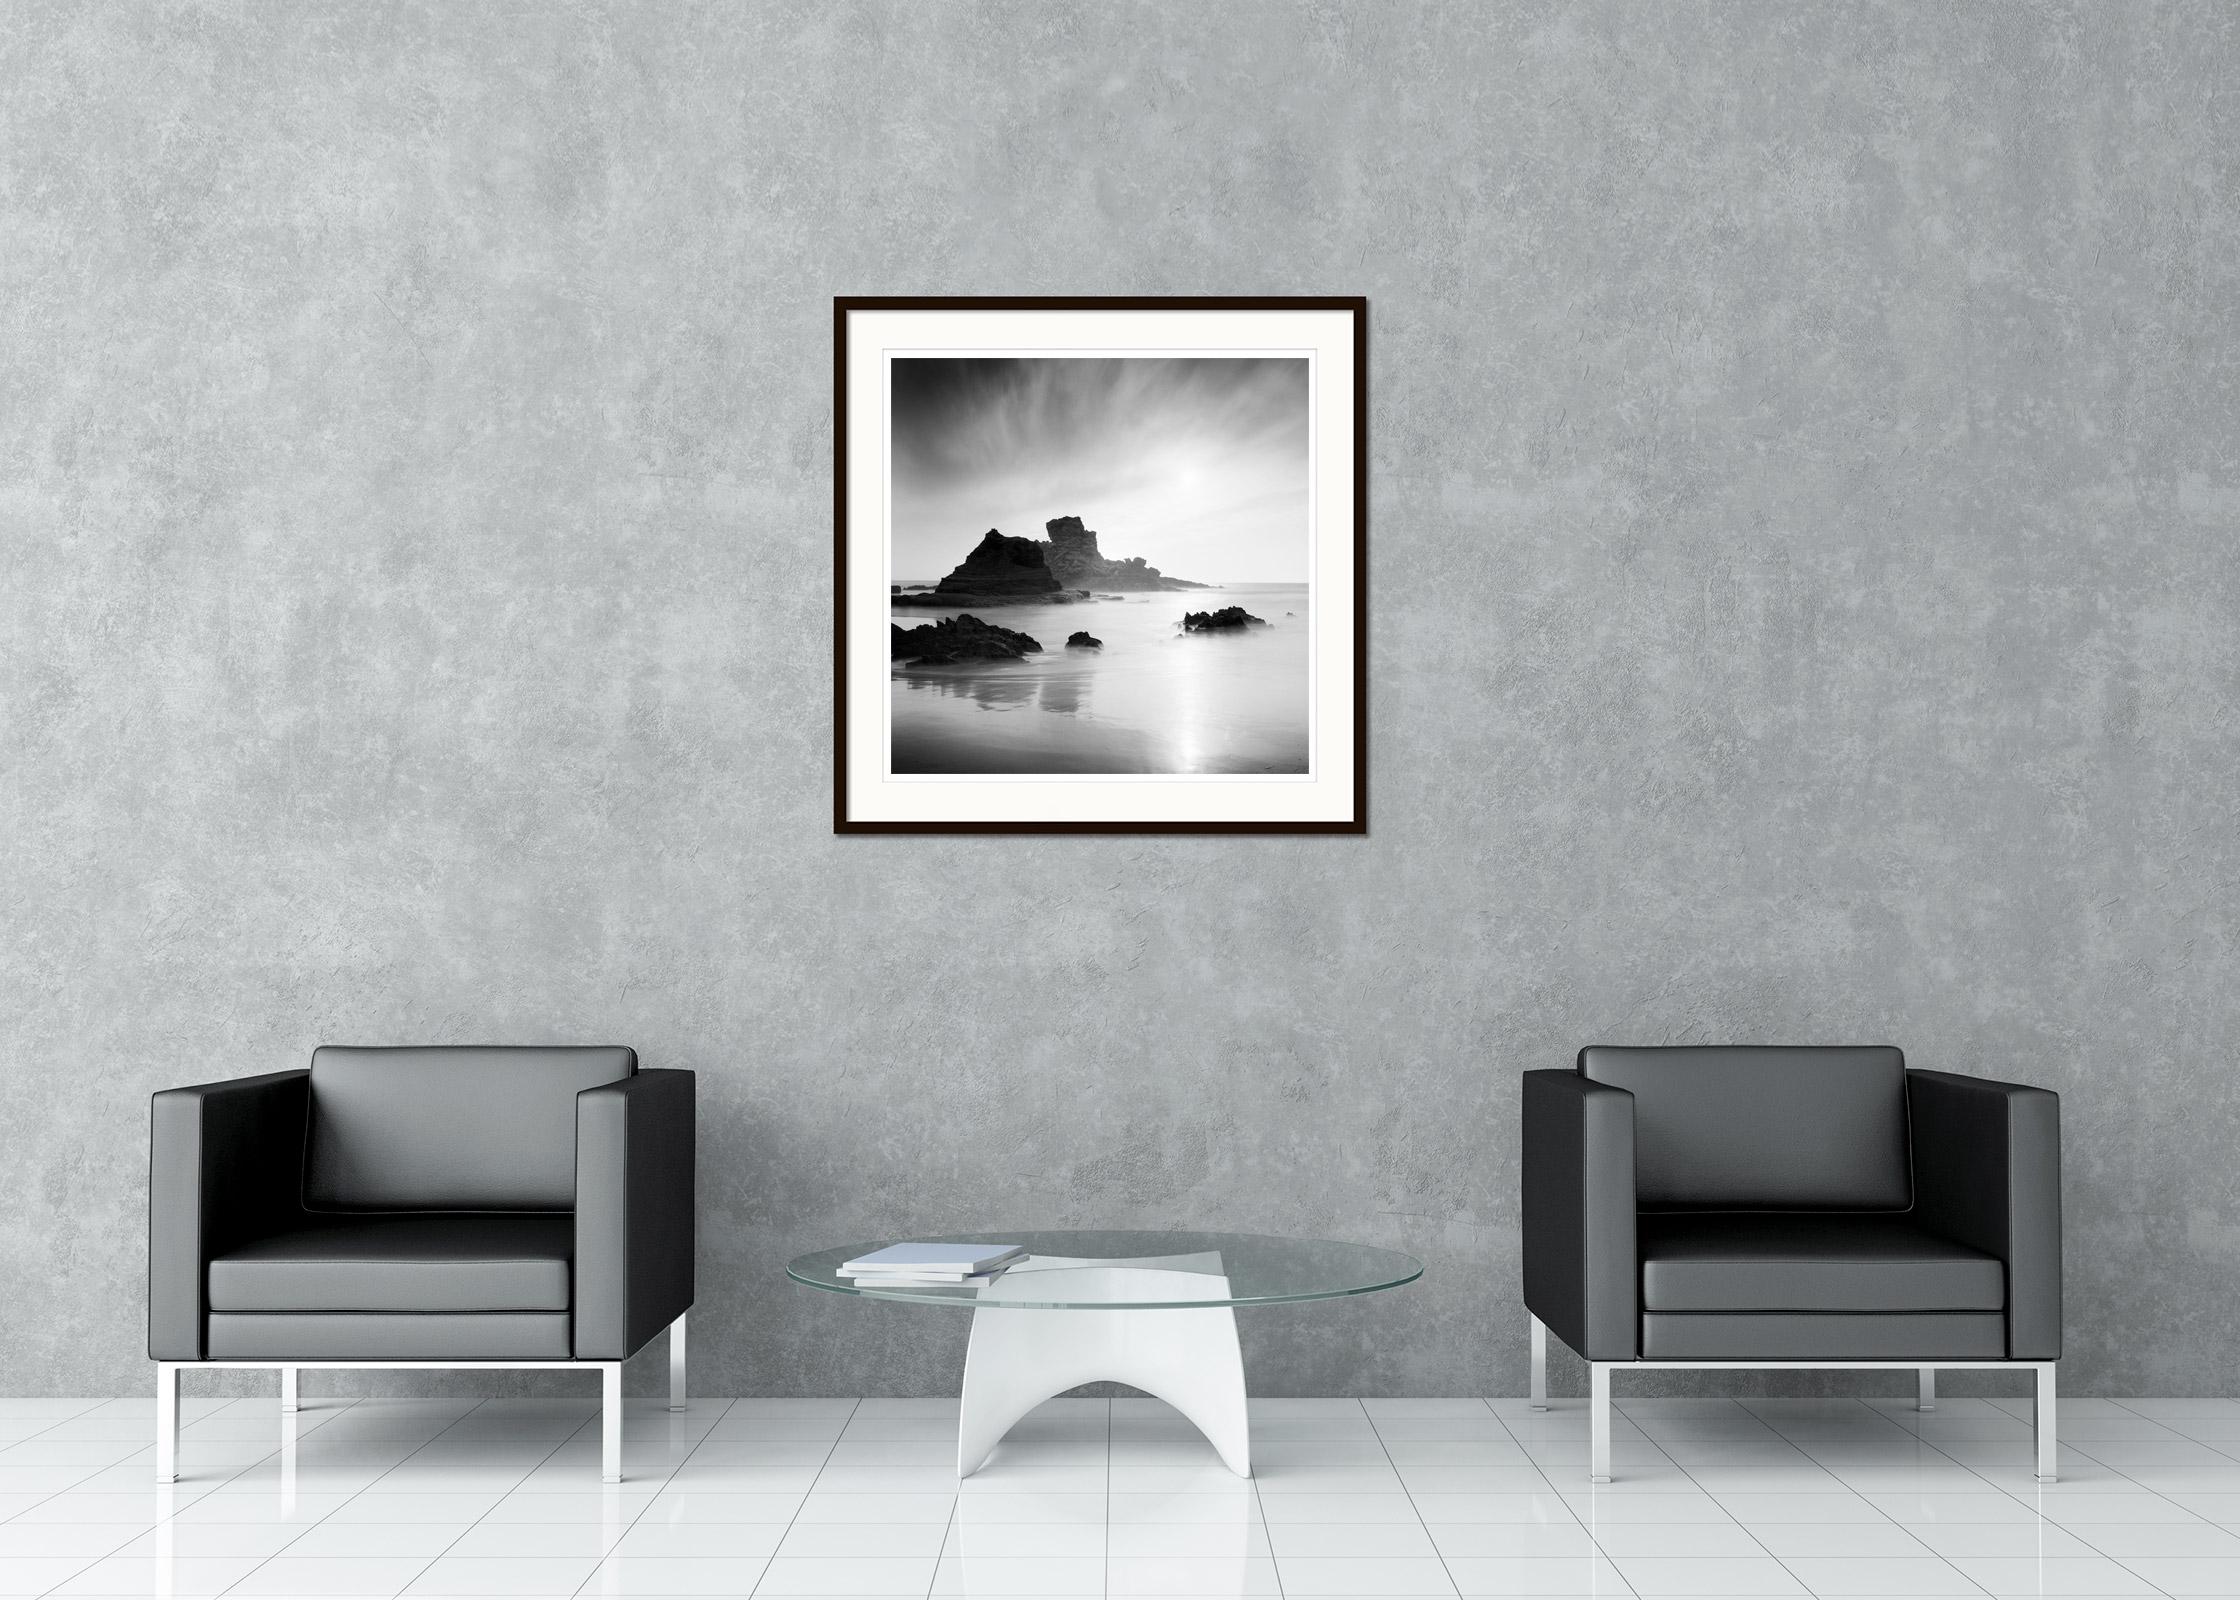 Schwarz-Weiß-Fotografie mit Langzeitbelichtung für Wasserlandschaften - Landschaftsfotografie. Pigmenttintendruck in einer limitierten Auflage von 15 Exemplaren. Alle Drucke von Gerald Berghammer werden auf Bestellung in limitierter Auflage auf